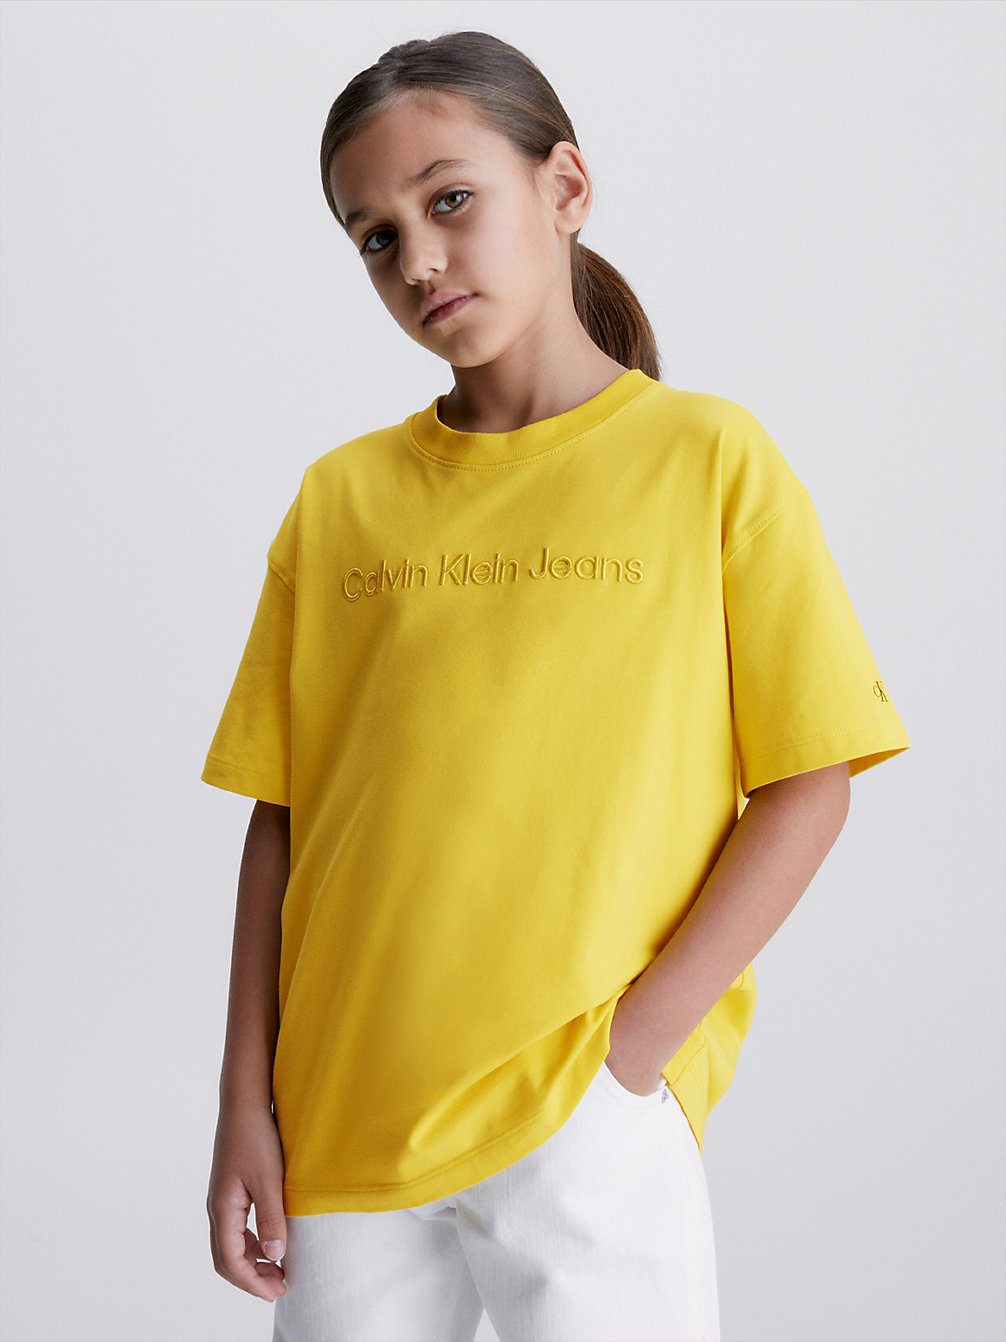 SUNDAY SUNSHINE > Lässiges Logo-T-Shirt > undefined boys - Calvin Klein